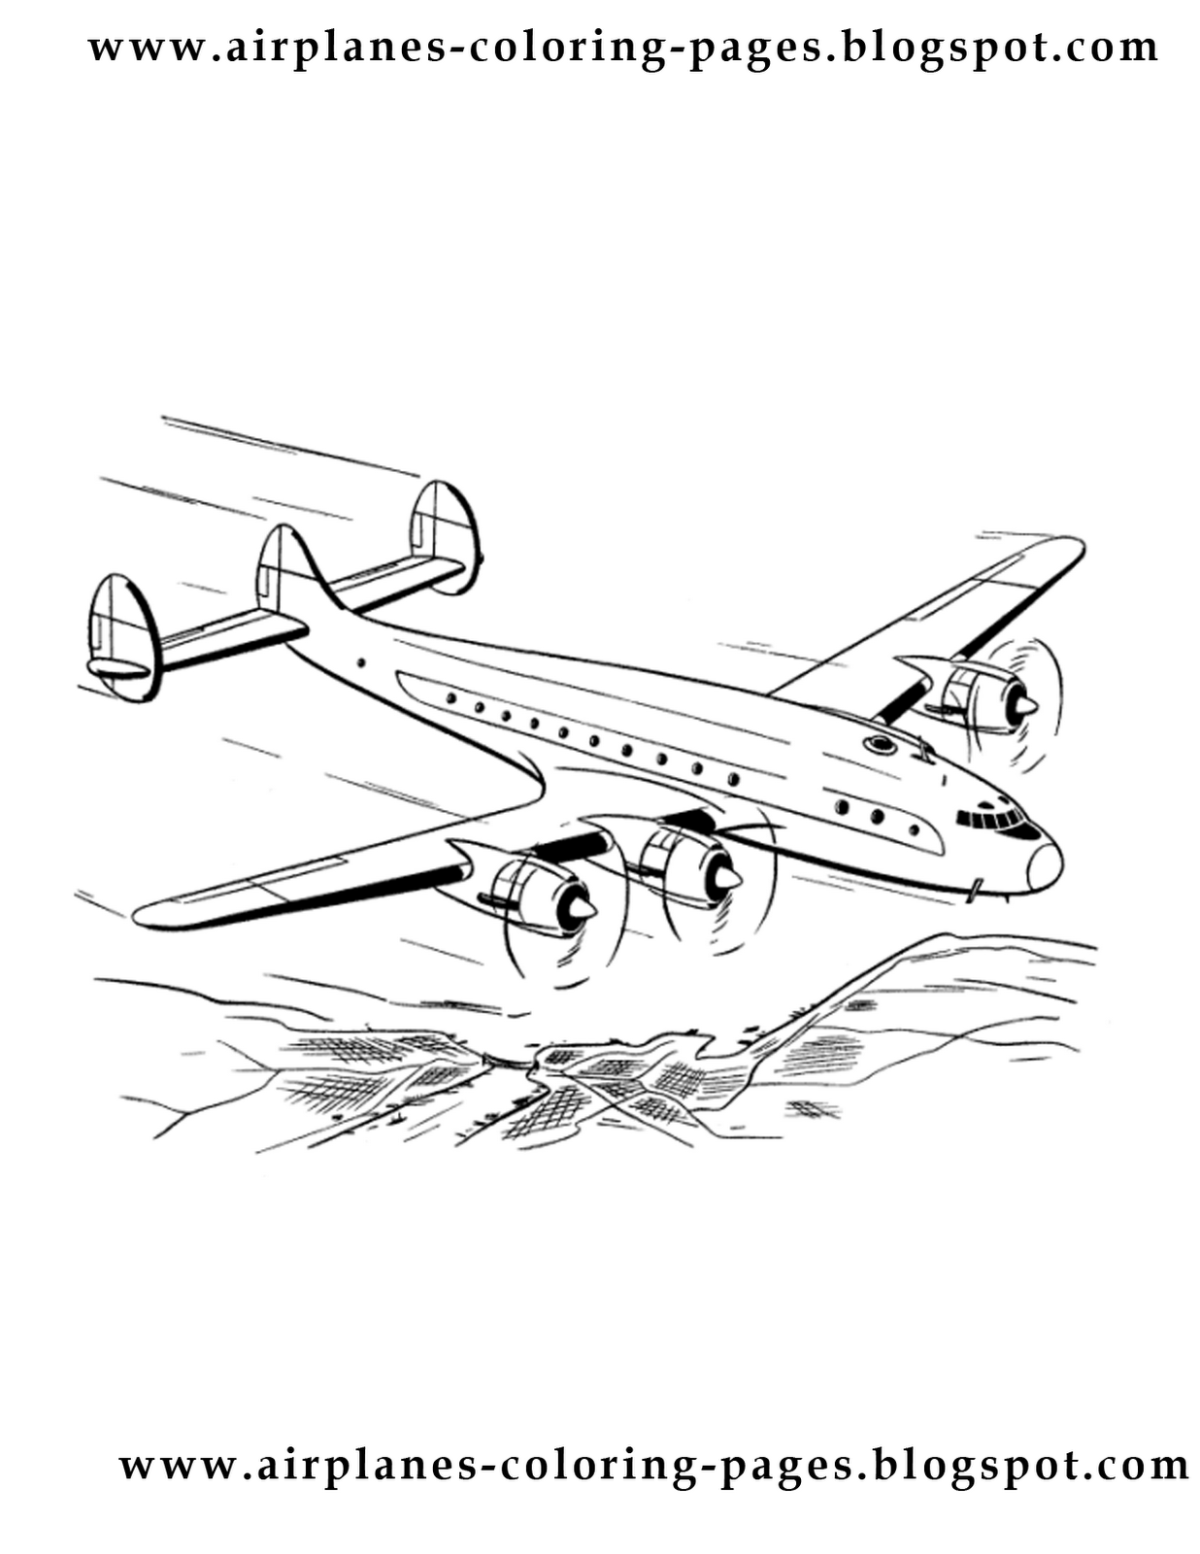 Упавший самолет рисунок